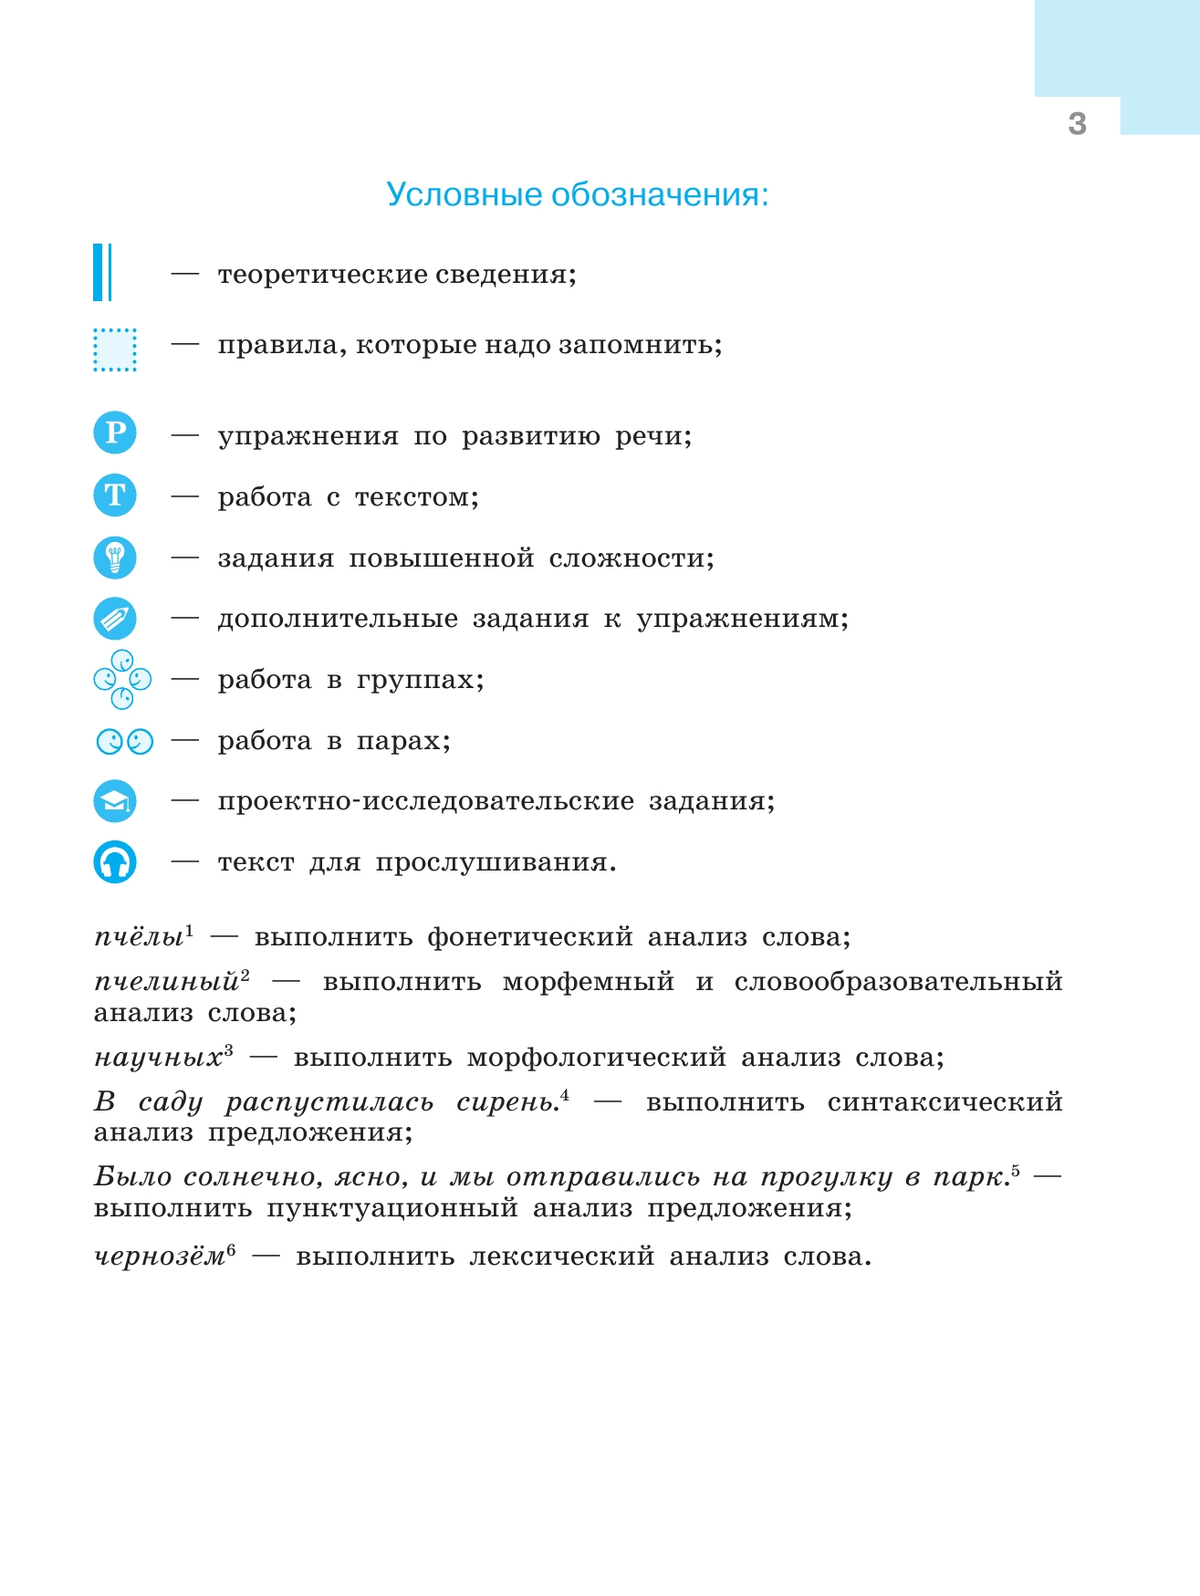 Русский язык. 9 класс. Учебник. 4